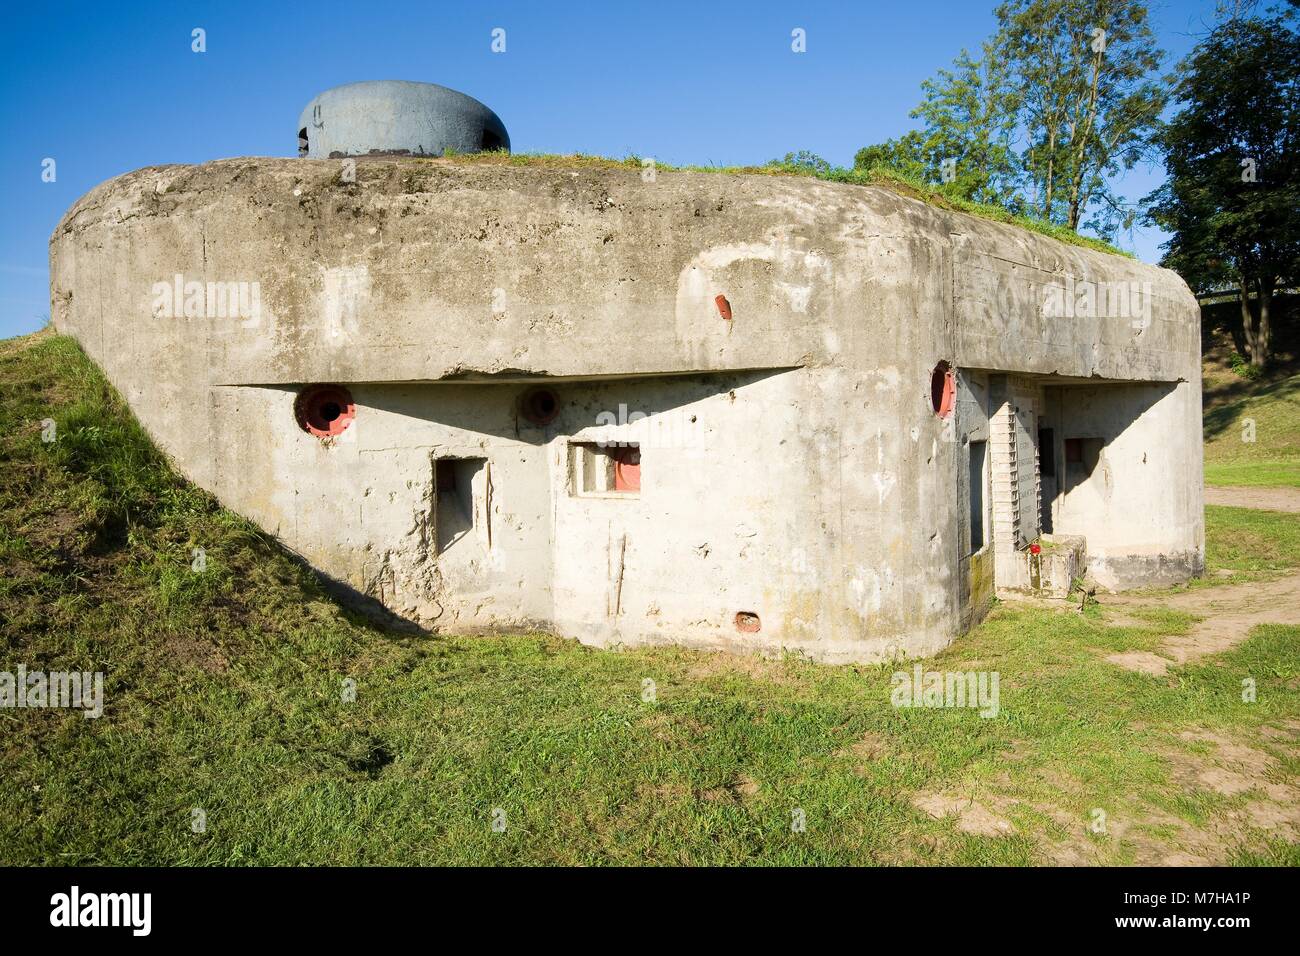 Schwere Bunker mit gepanzerten Kuppel in Nowogrod - Teil der polnischen Narew Fluss Verteidigung während des Zweiten Weltkriegs Stockfoto